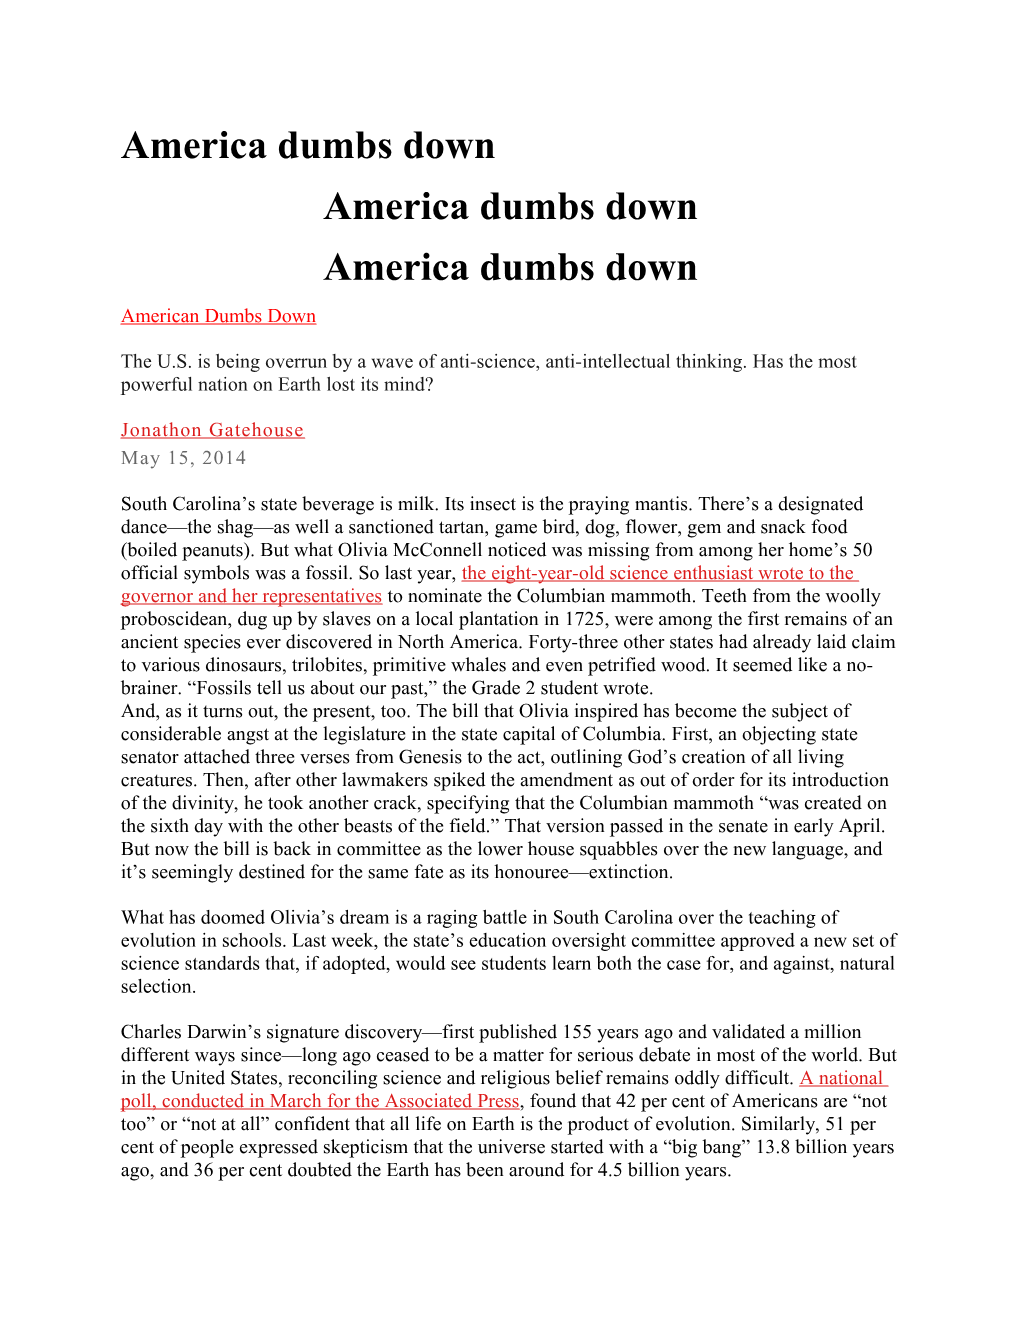 America Dumbs Down